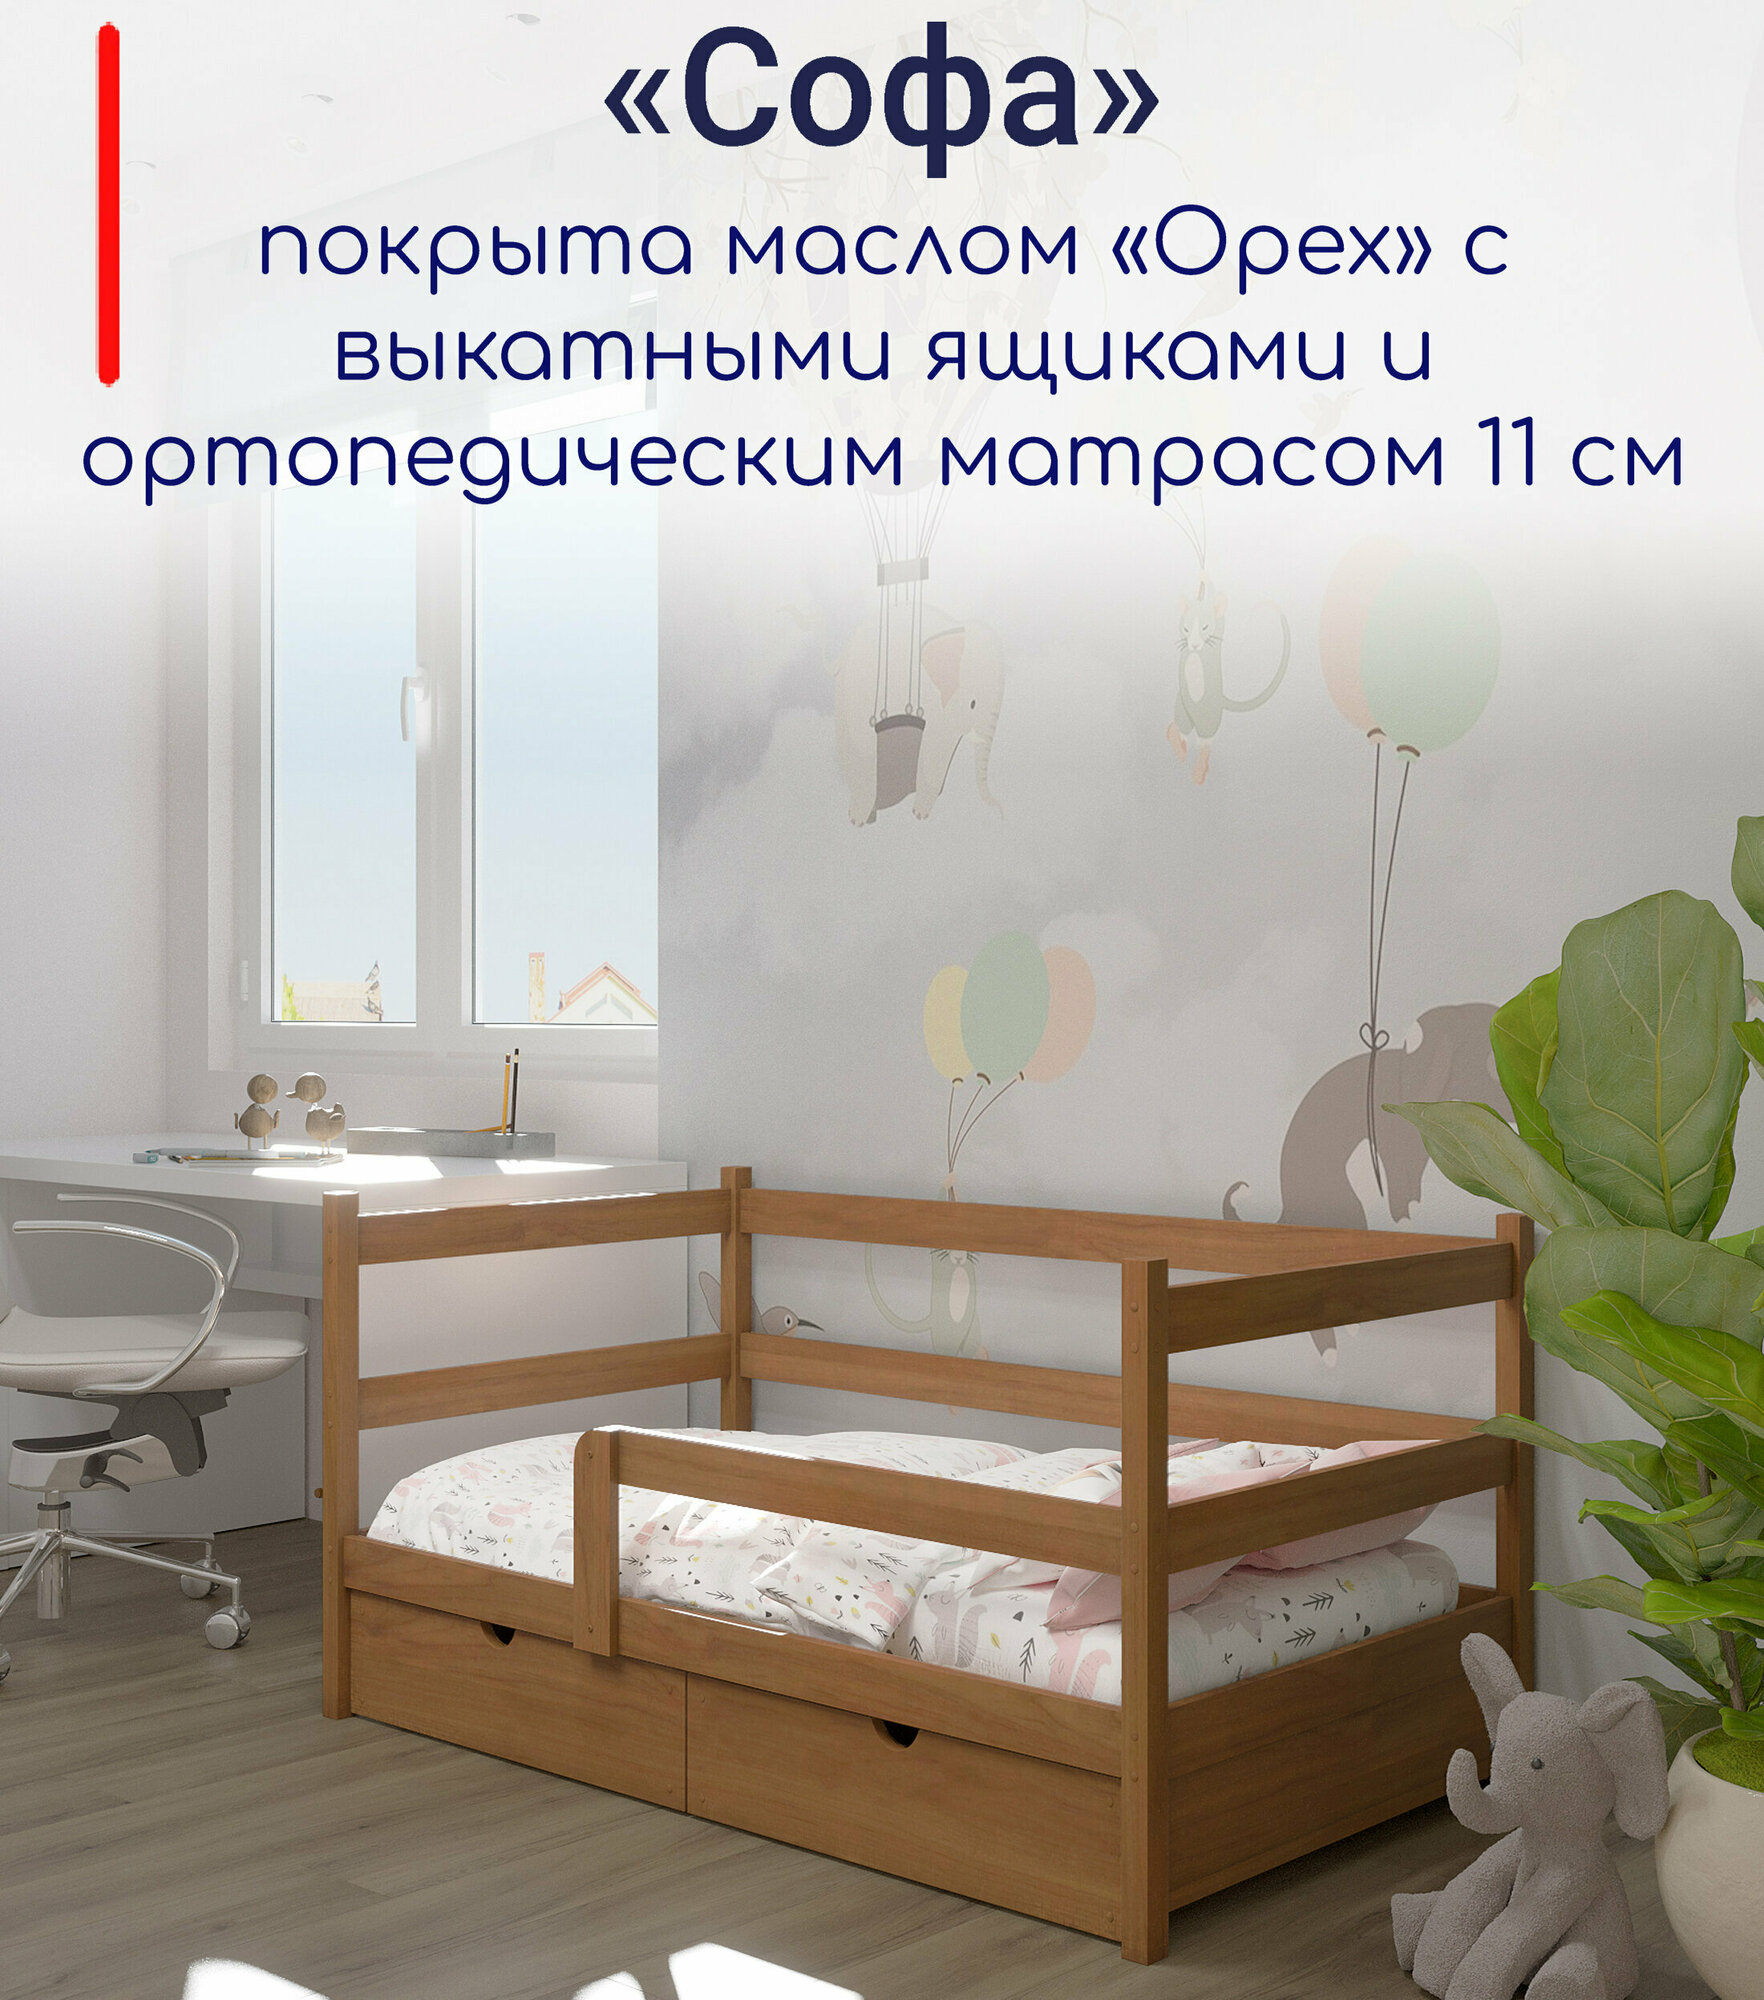 Кровать детская, подростковая "Софа", спальное место 180х90, в комплекте с выкатными ящиками и ортопедическим матрасом, масло "Орех", из массива